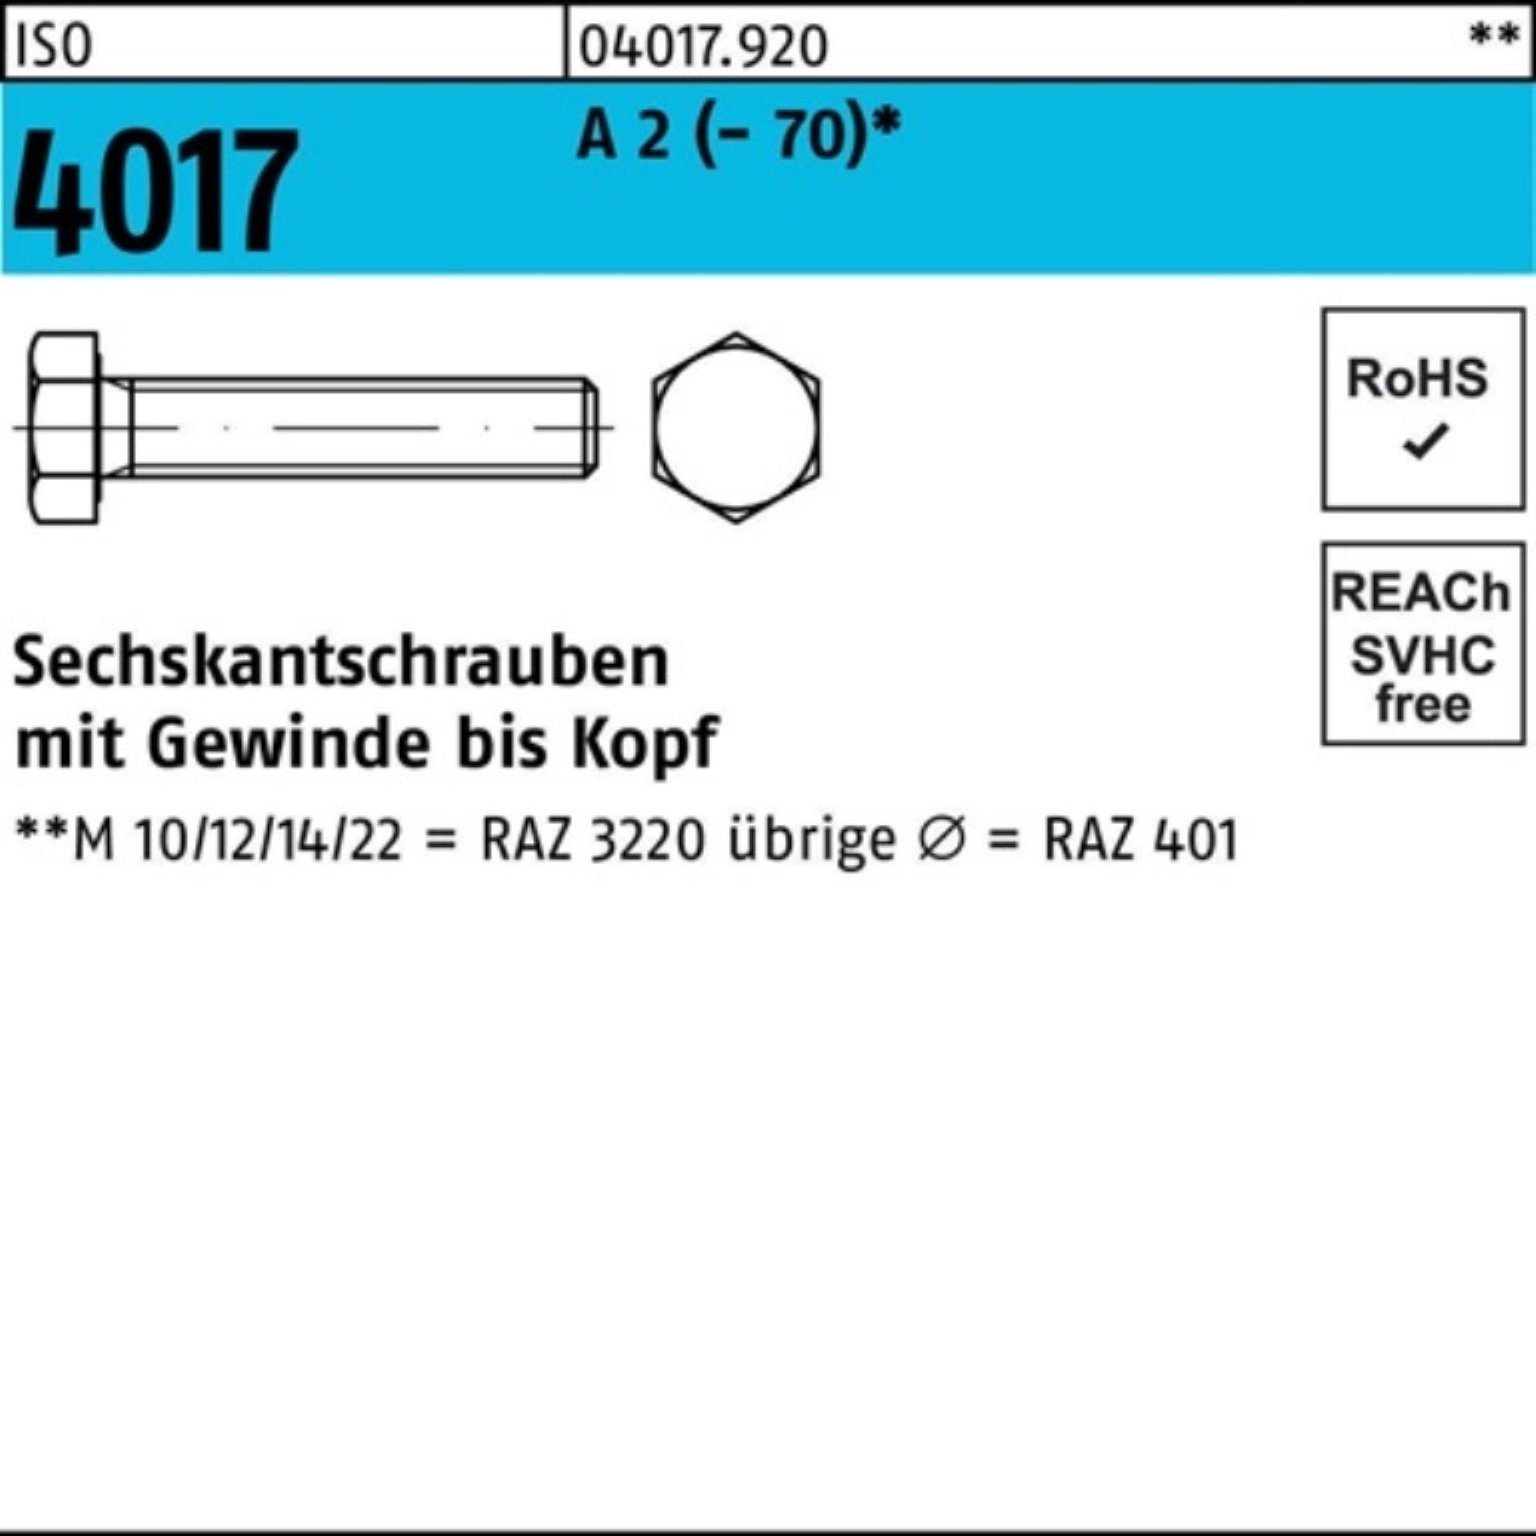 Bufab Sechskantschraube 100er Pack Sechskantschraube ISO 4017 VG M18x 90 A 2 (70) 25 Stück